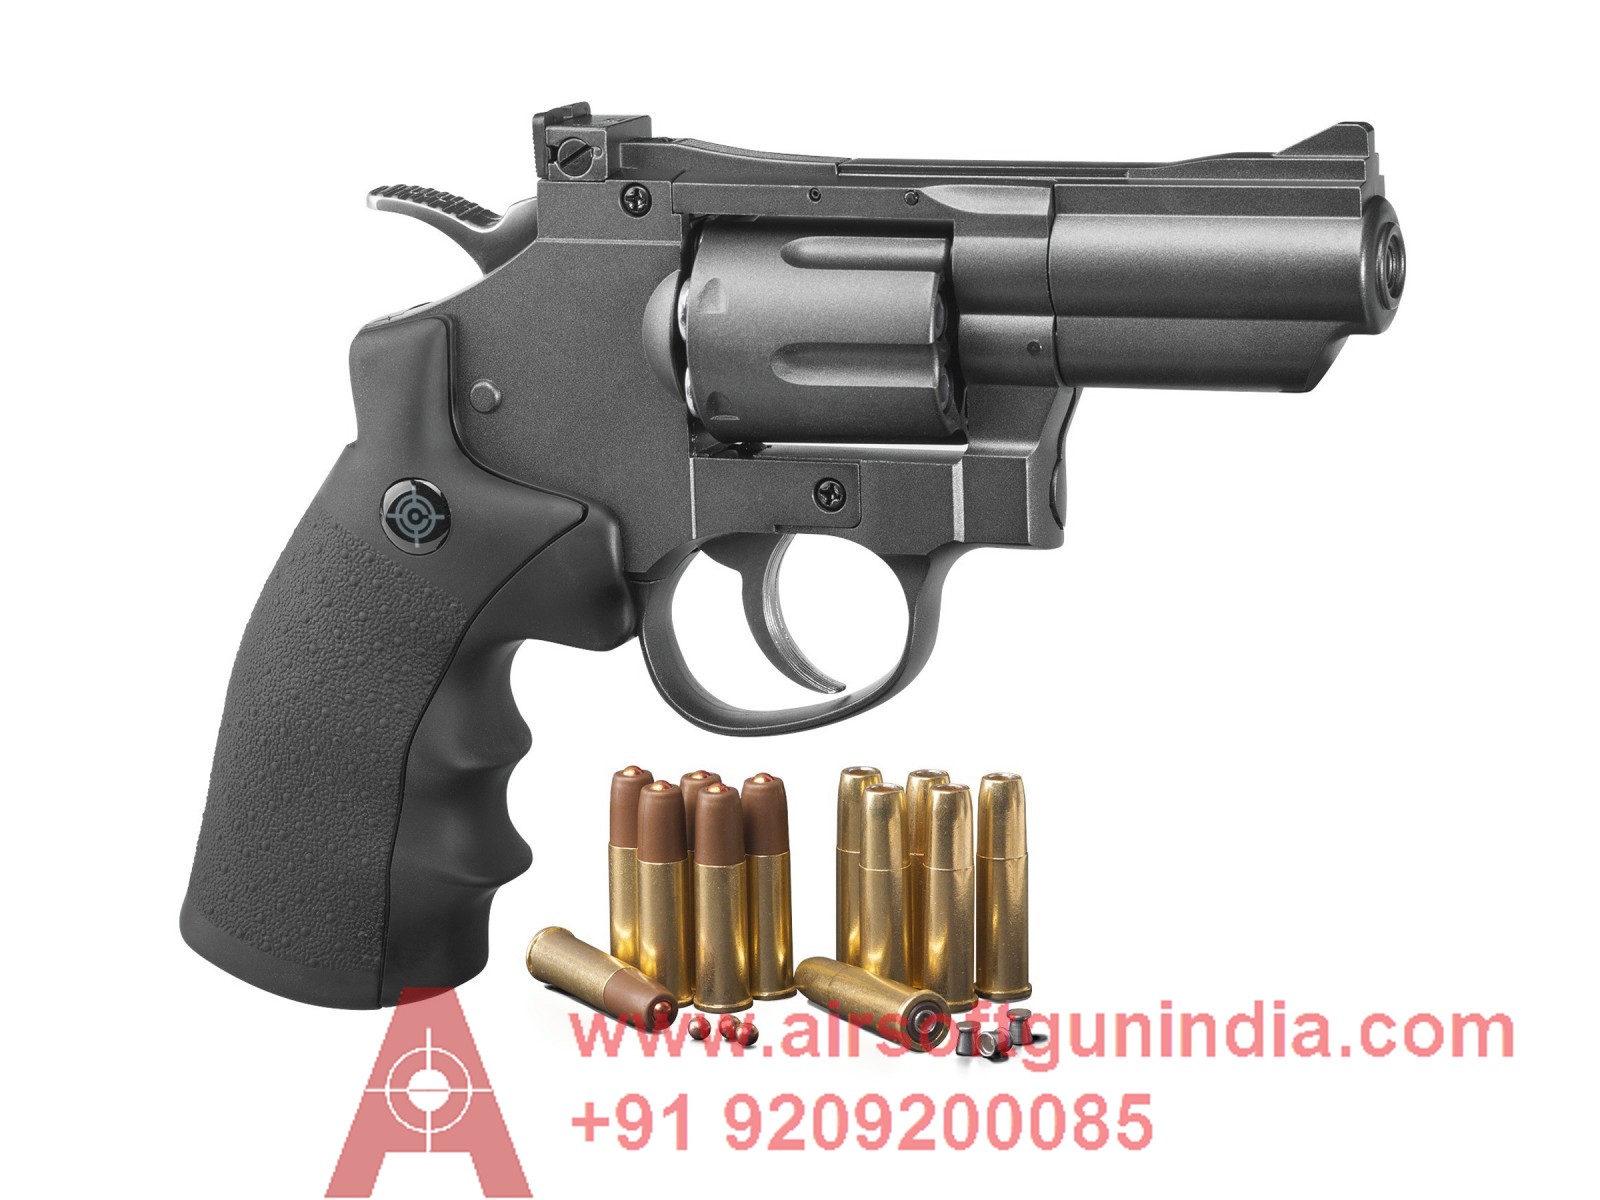 Crosman SNR357 CO2 Dual Ammo Full Metal Revolver By Airsoft Gun India